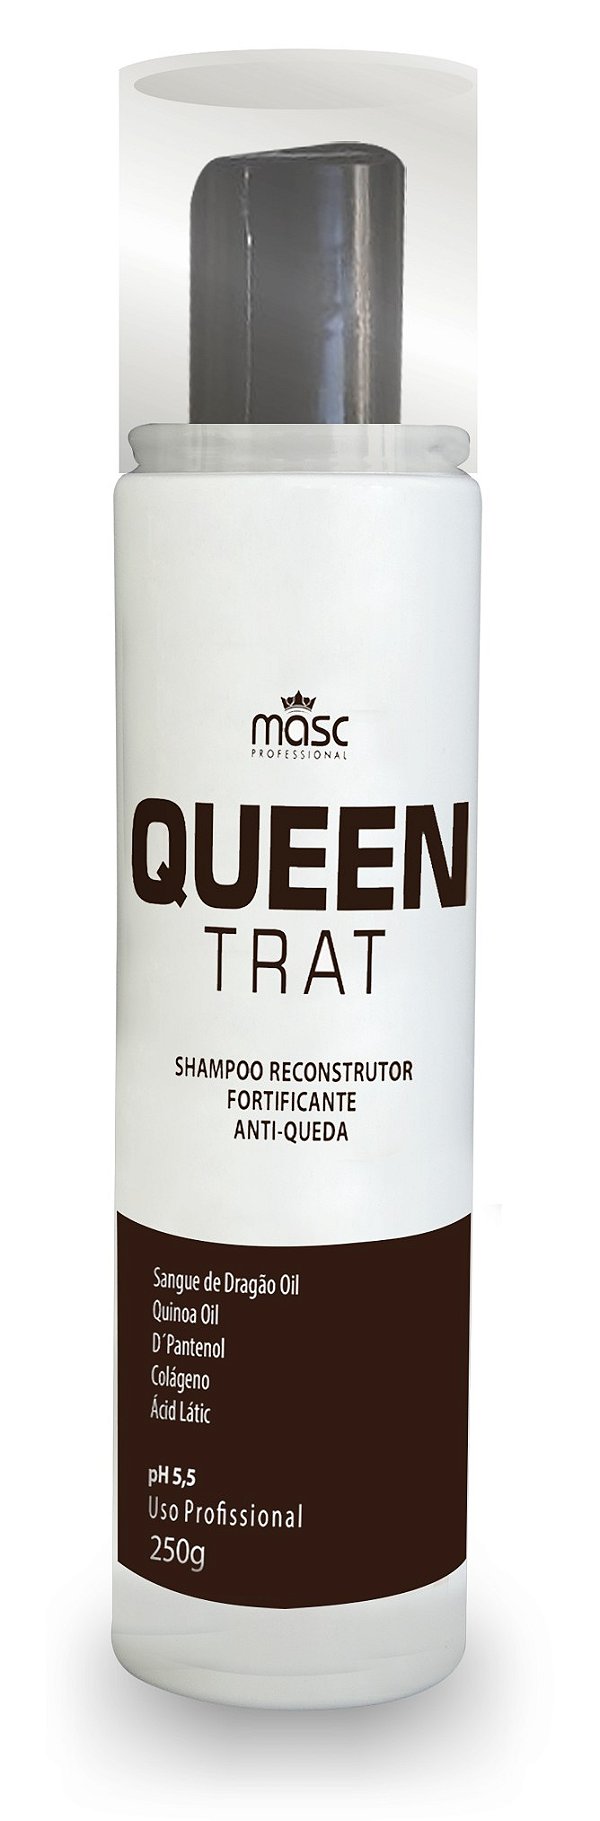 Shampoo Queen Tratamento  Antiqueda E Anti-caspa